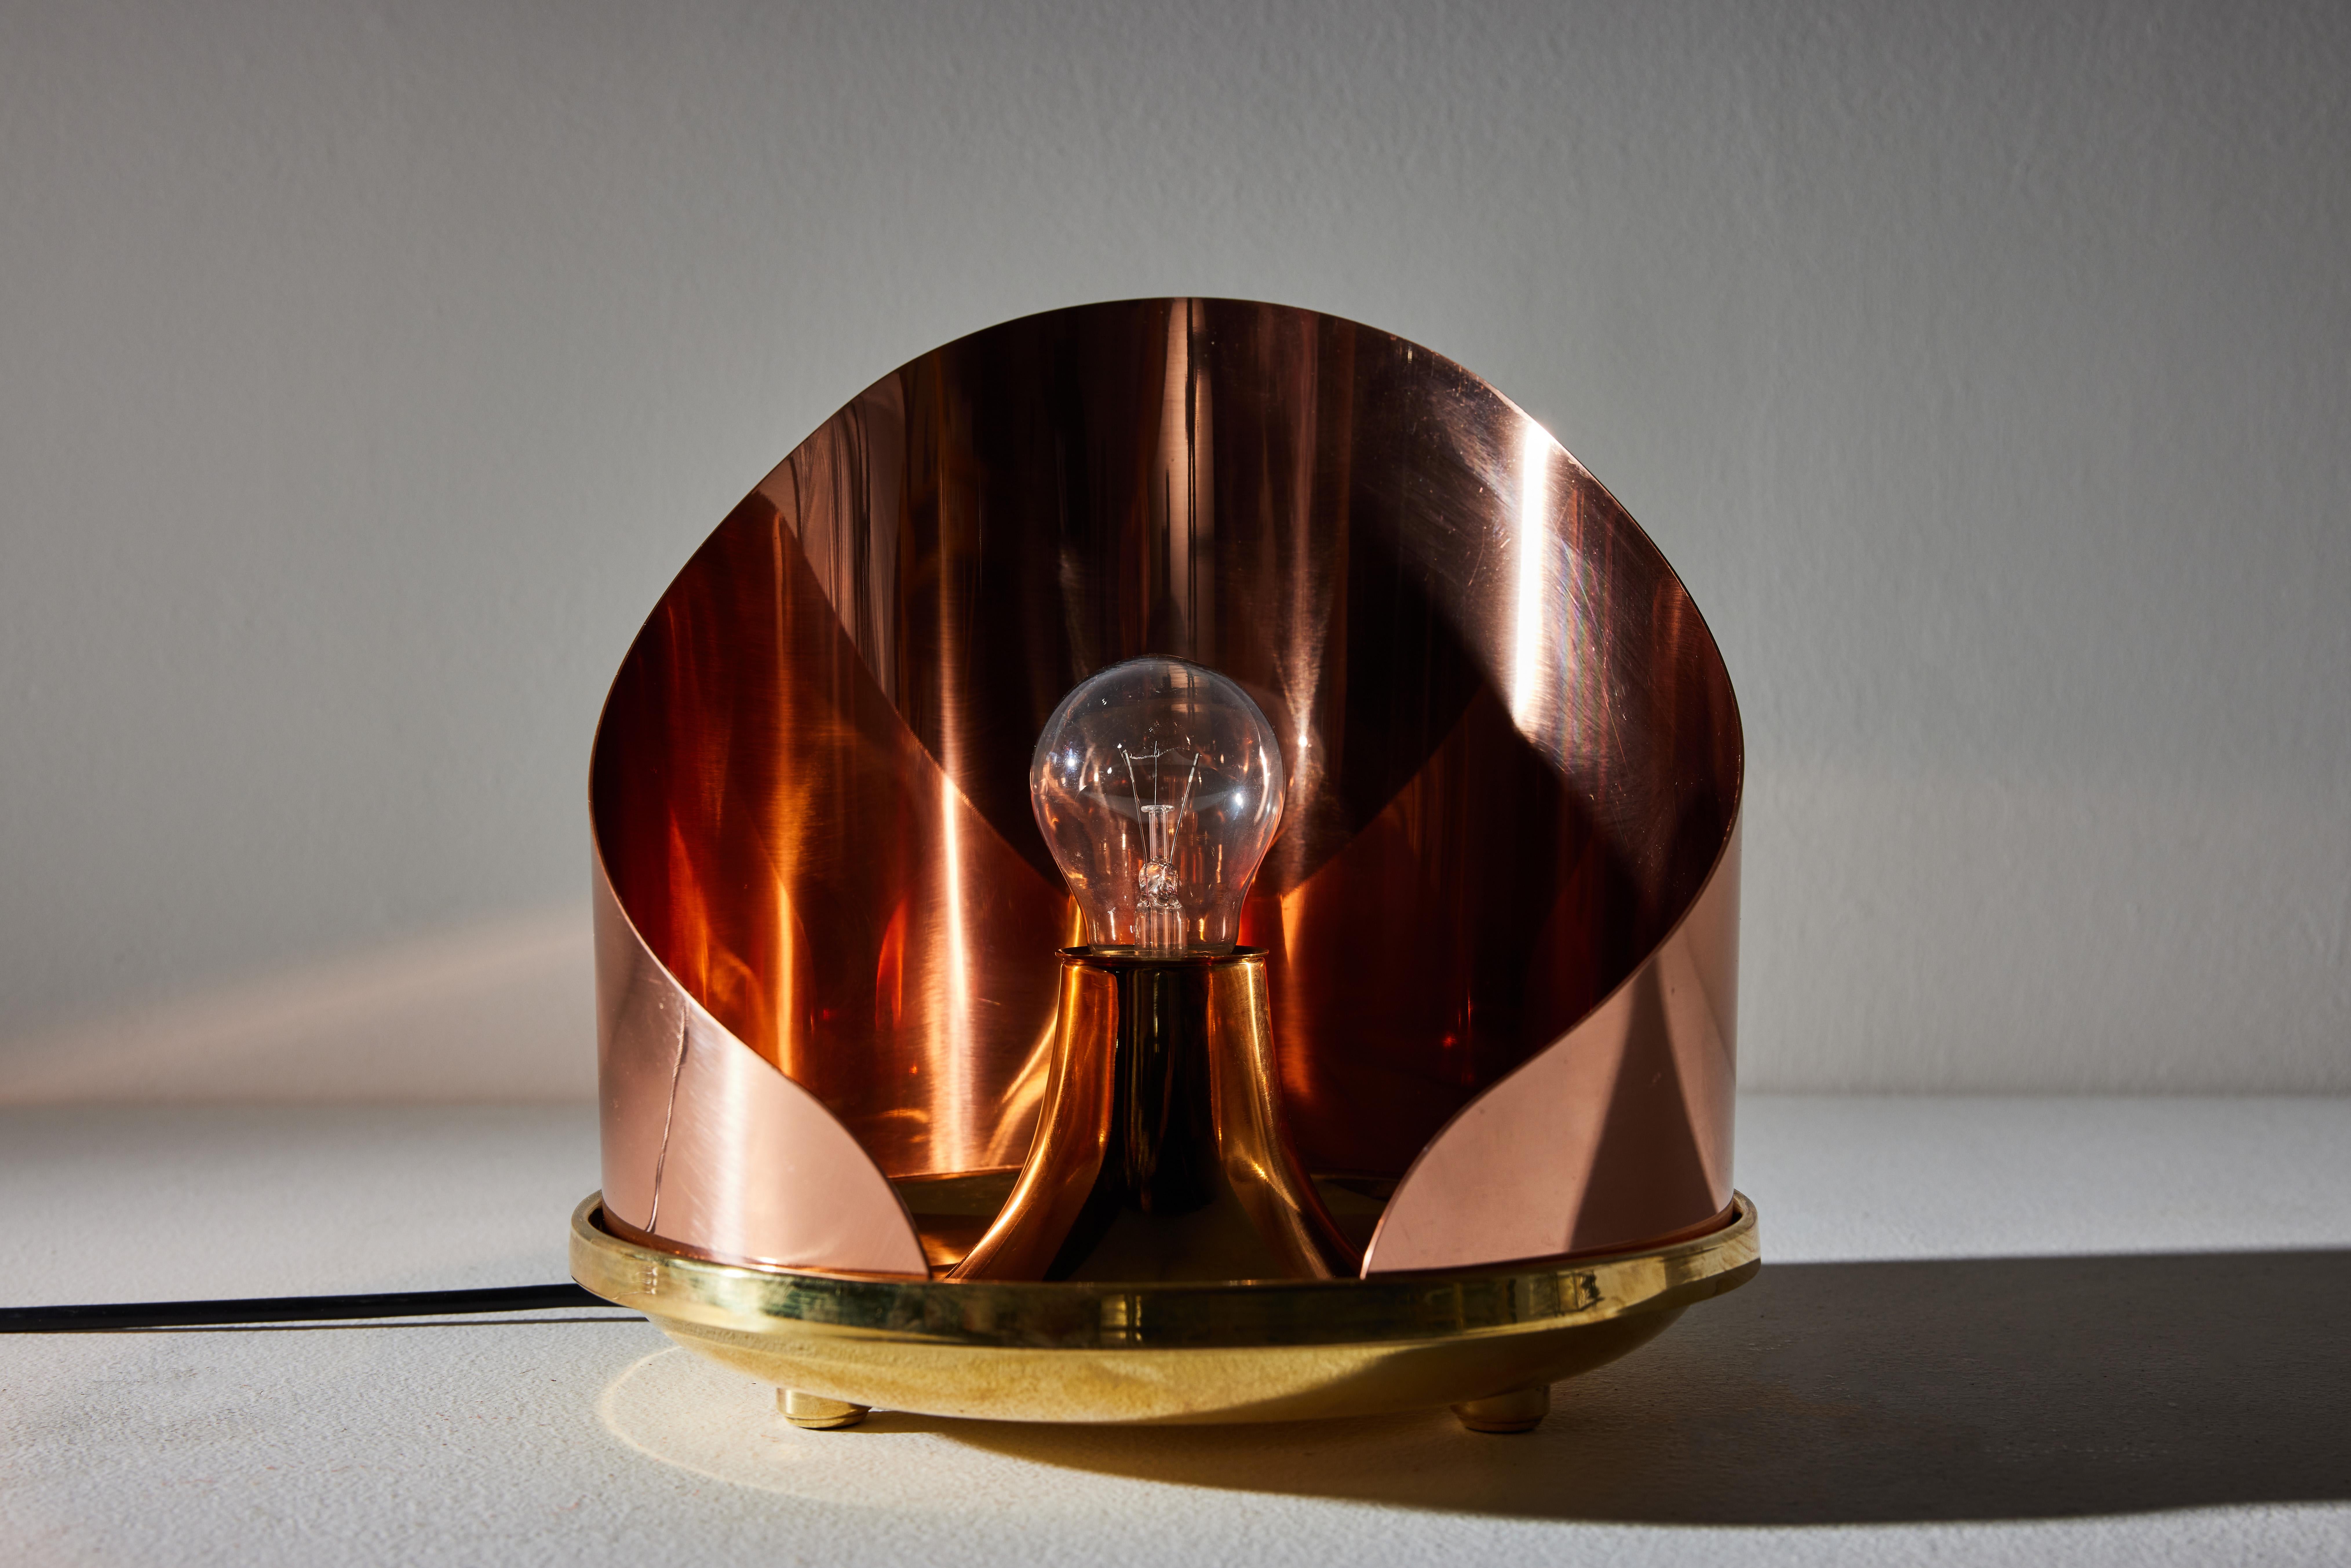 Model Lta12 Ventola Table Lamp by Luigi Caccia Dominioni for Azucena For Sale 1